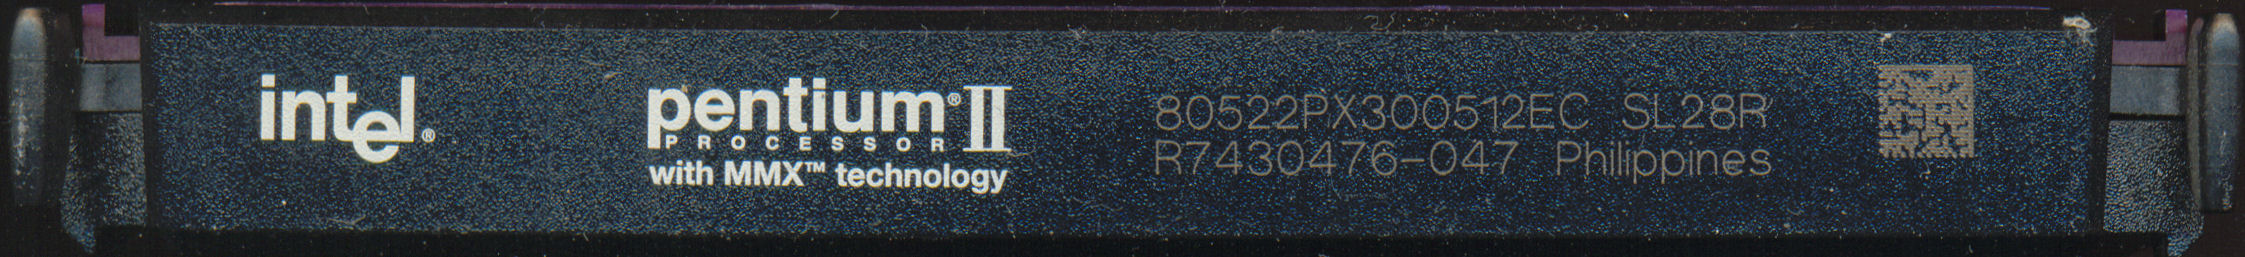 Intel PII 80522PX300512EC SL28R